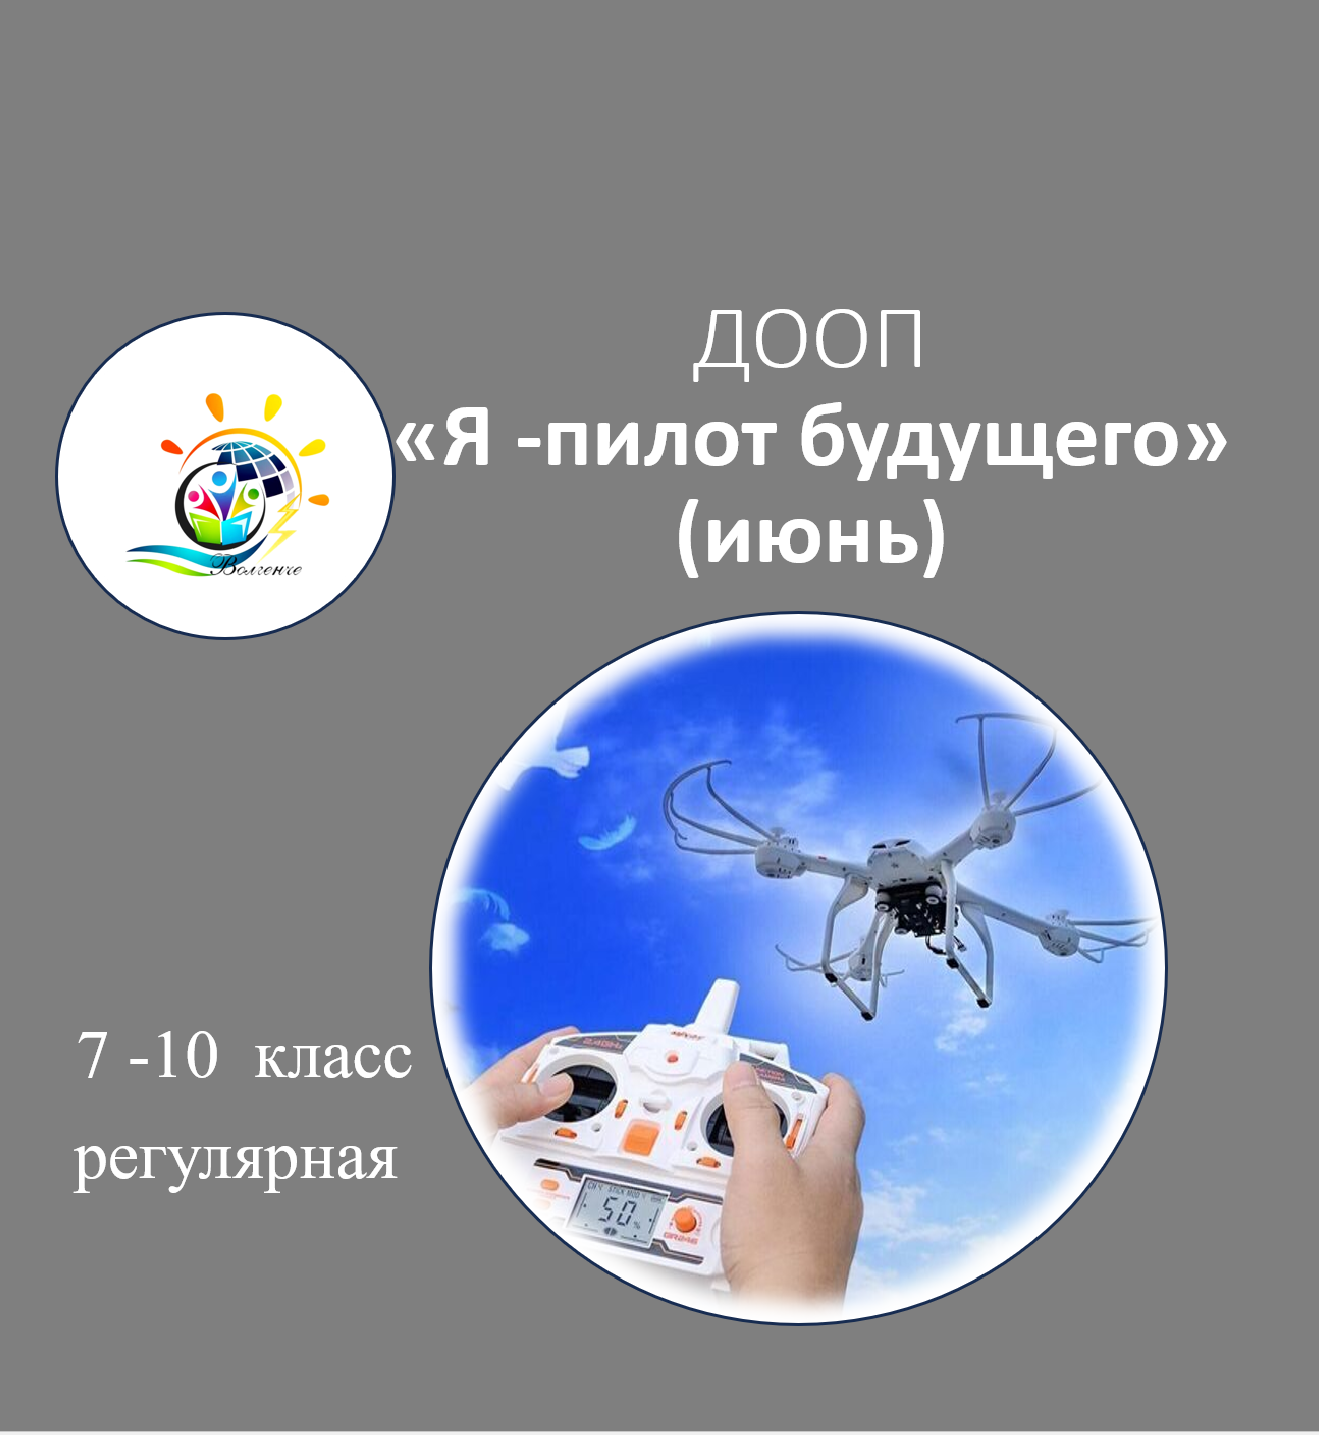 ДООП "Я-пилот будущего" (июнь)